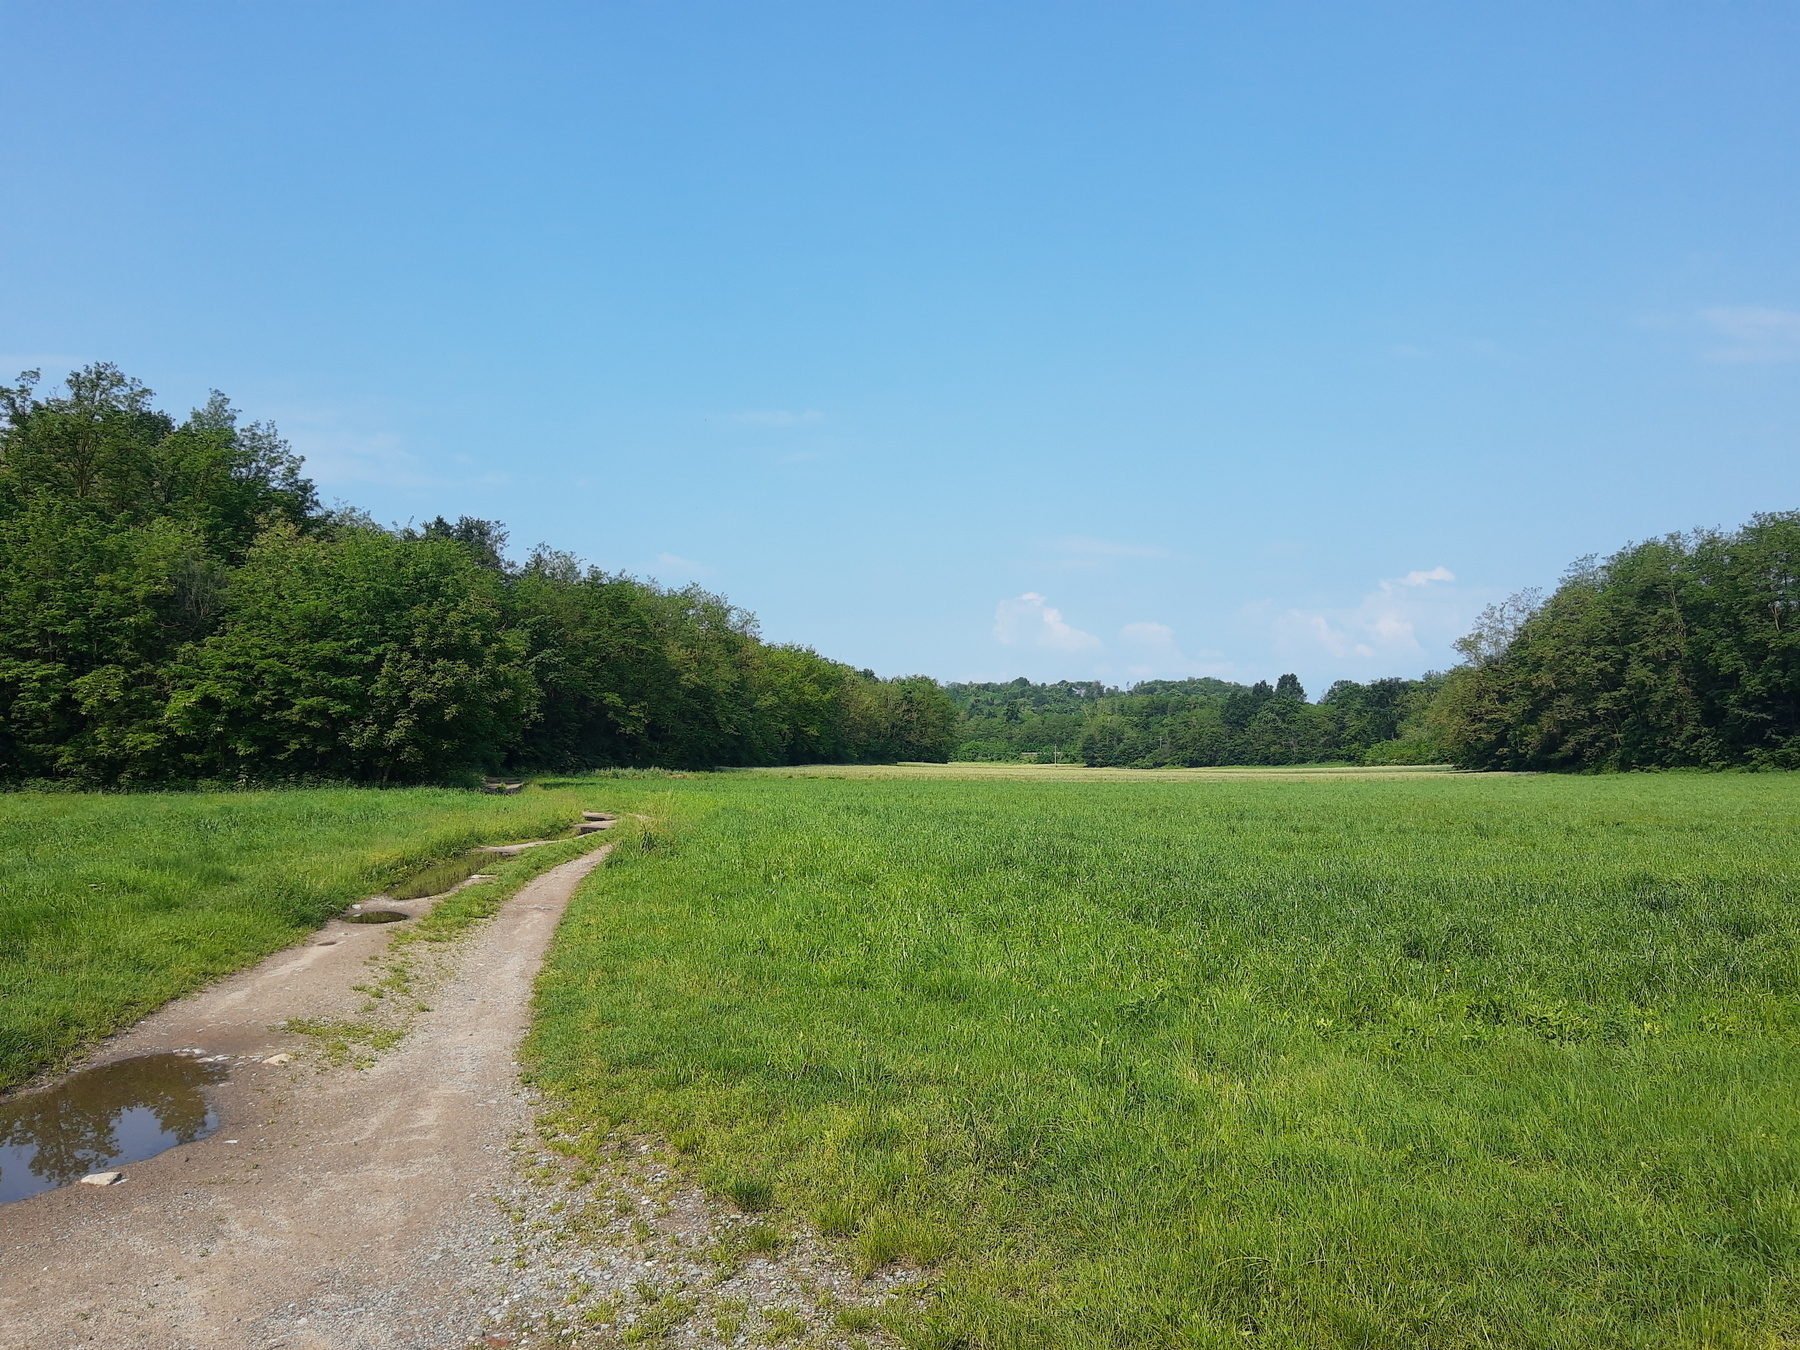 A walking trail near some green fields